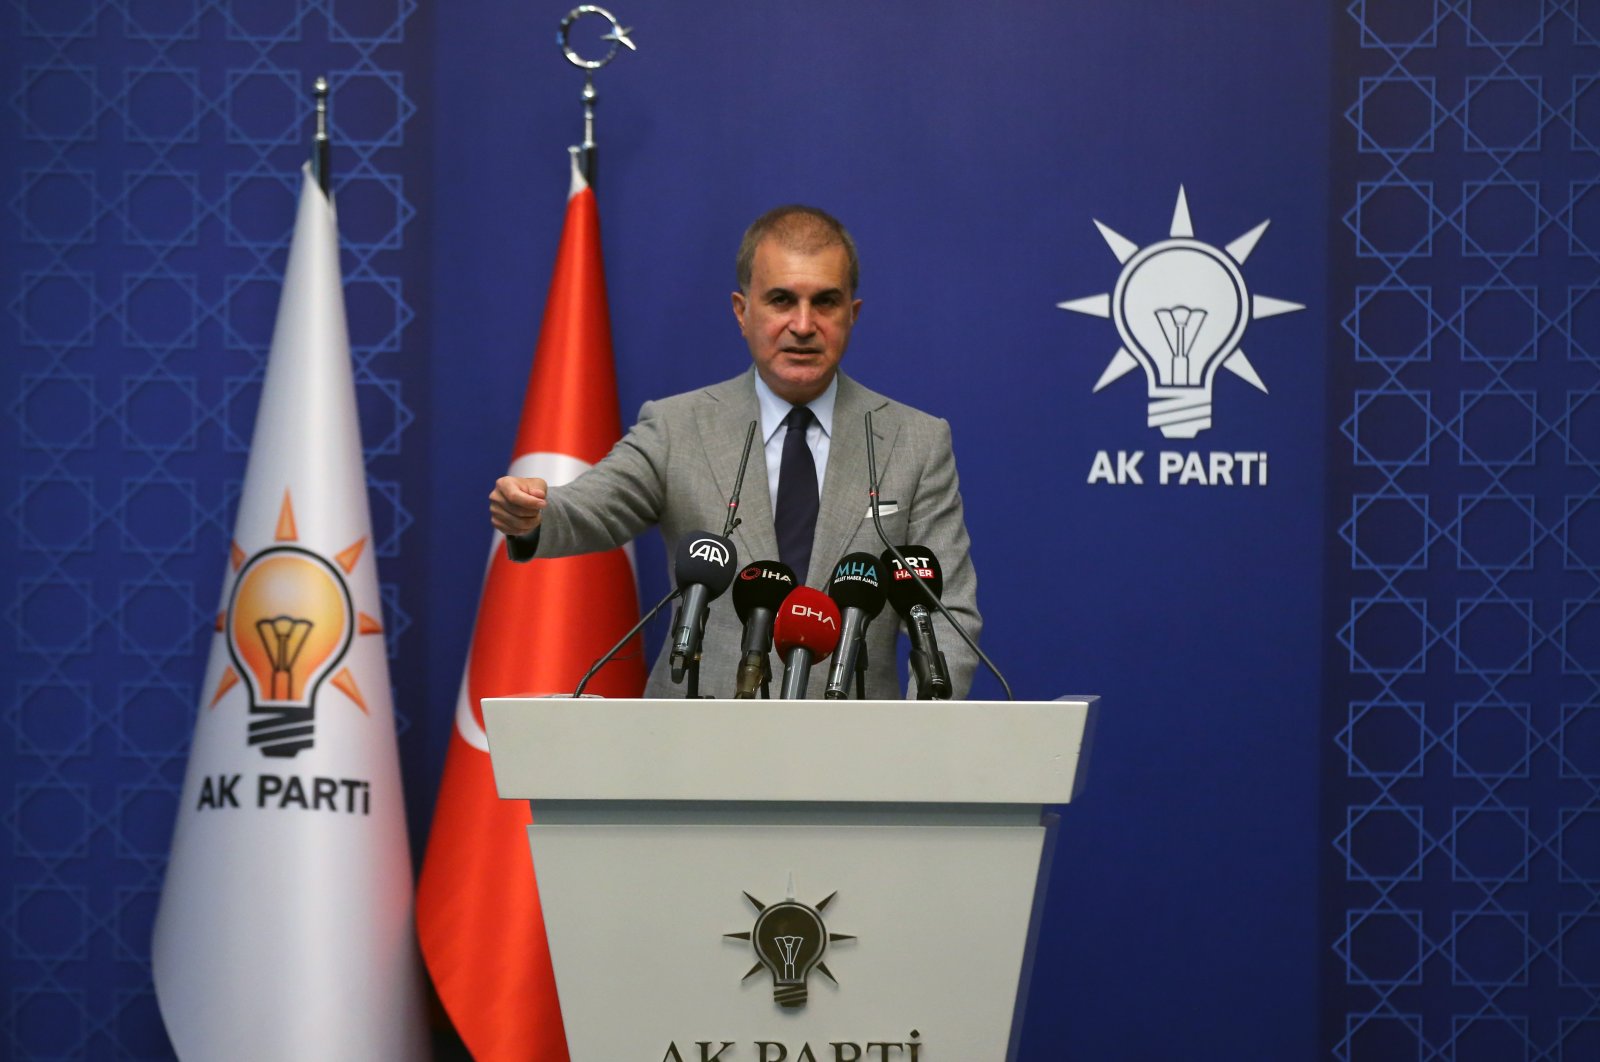 AK Party spokesperson Ömer Çelik speaks to reporters at a news conference in Ankara, Turkey, July 25, 2022. (AA Photo)